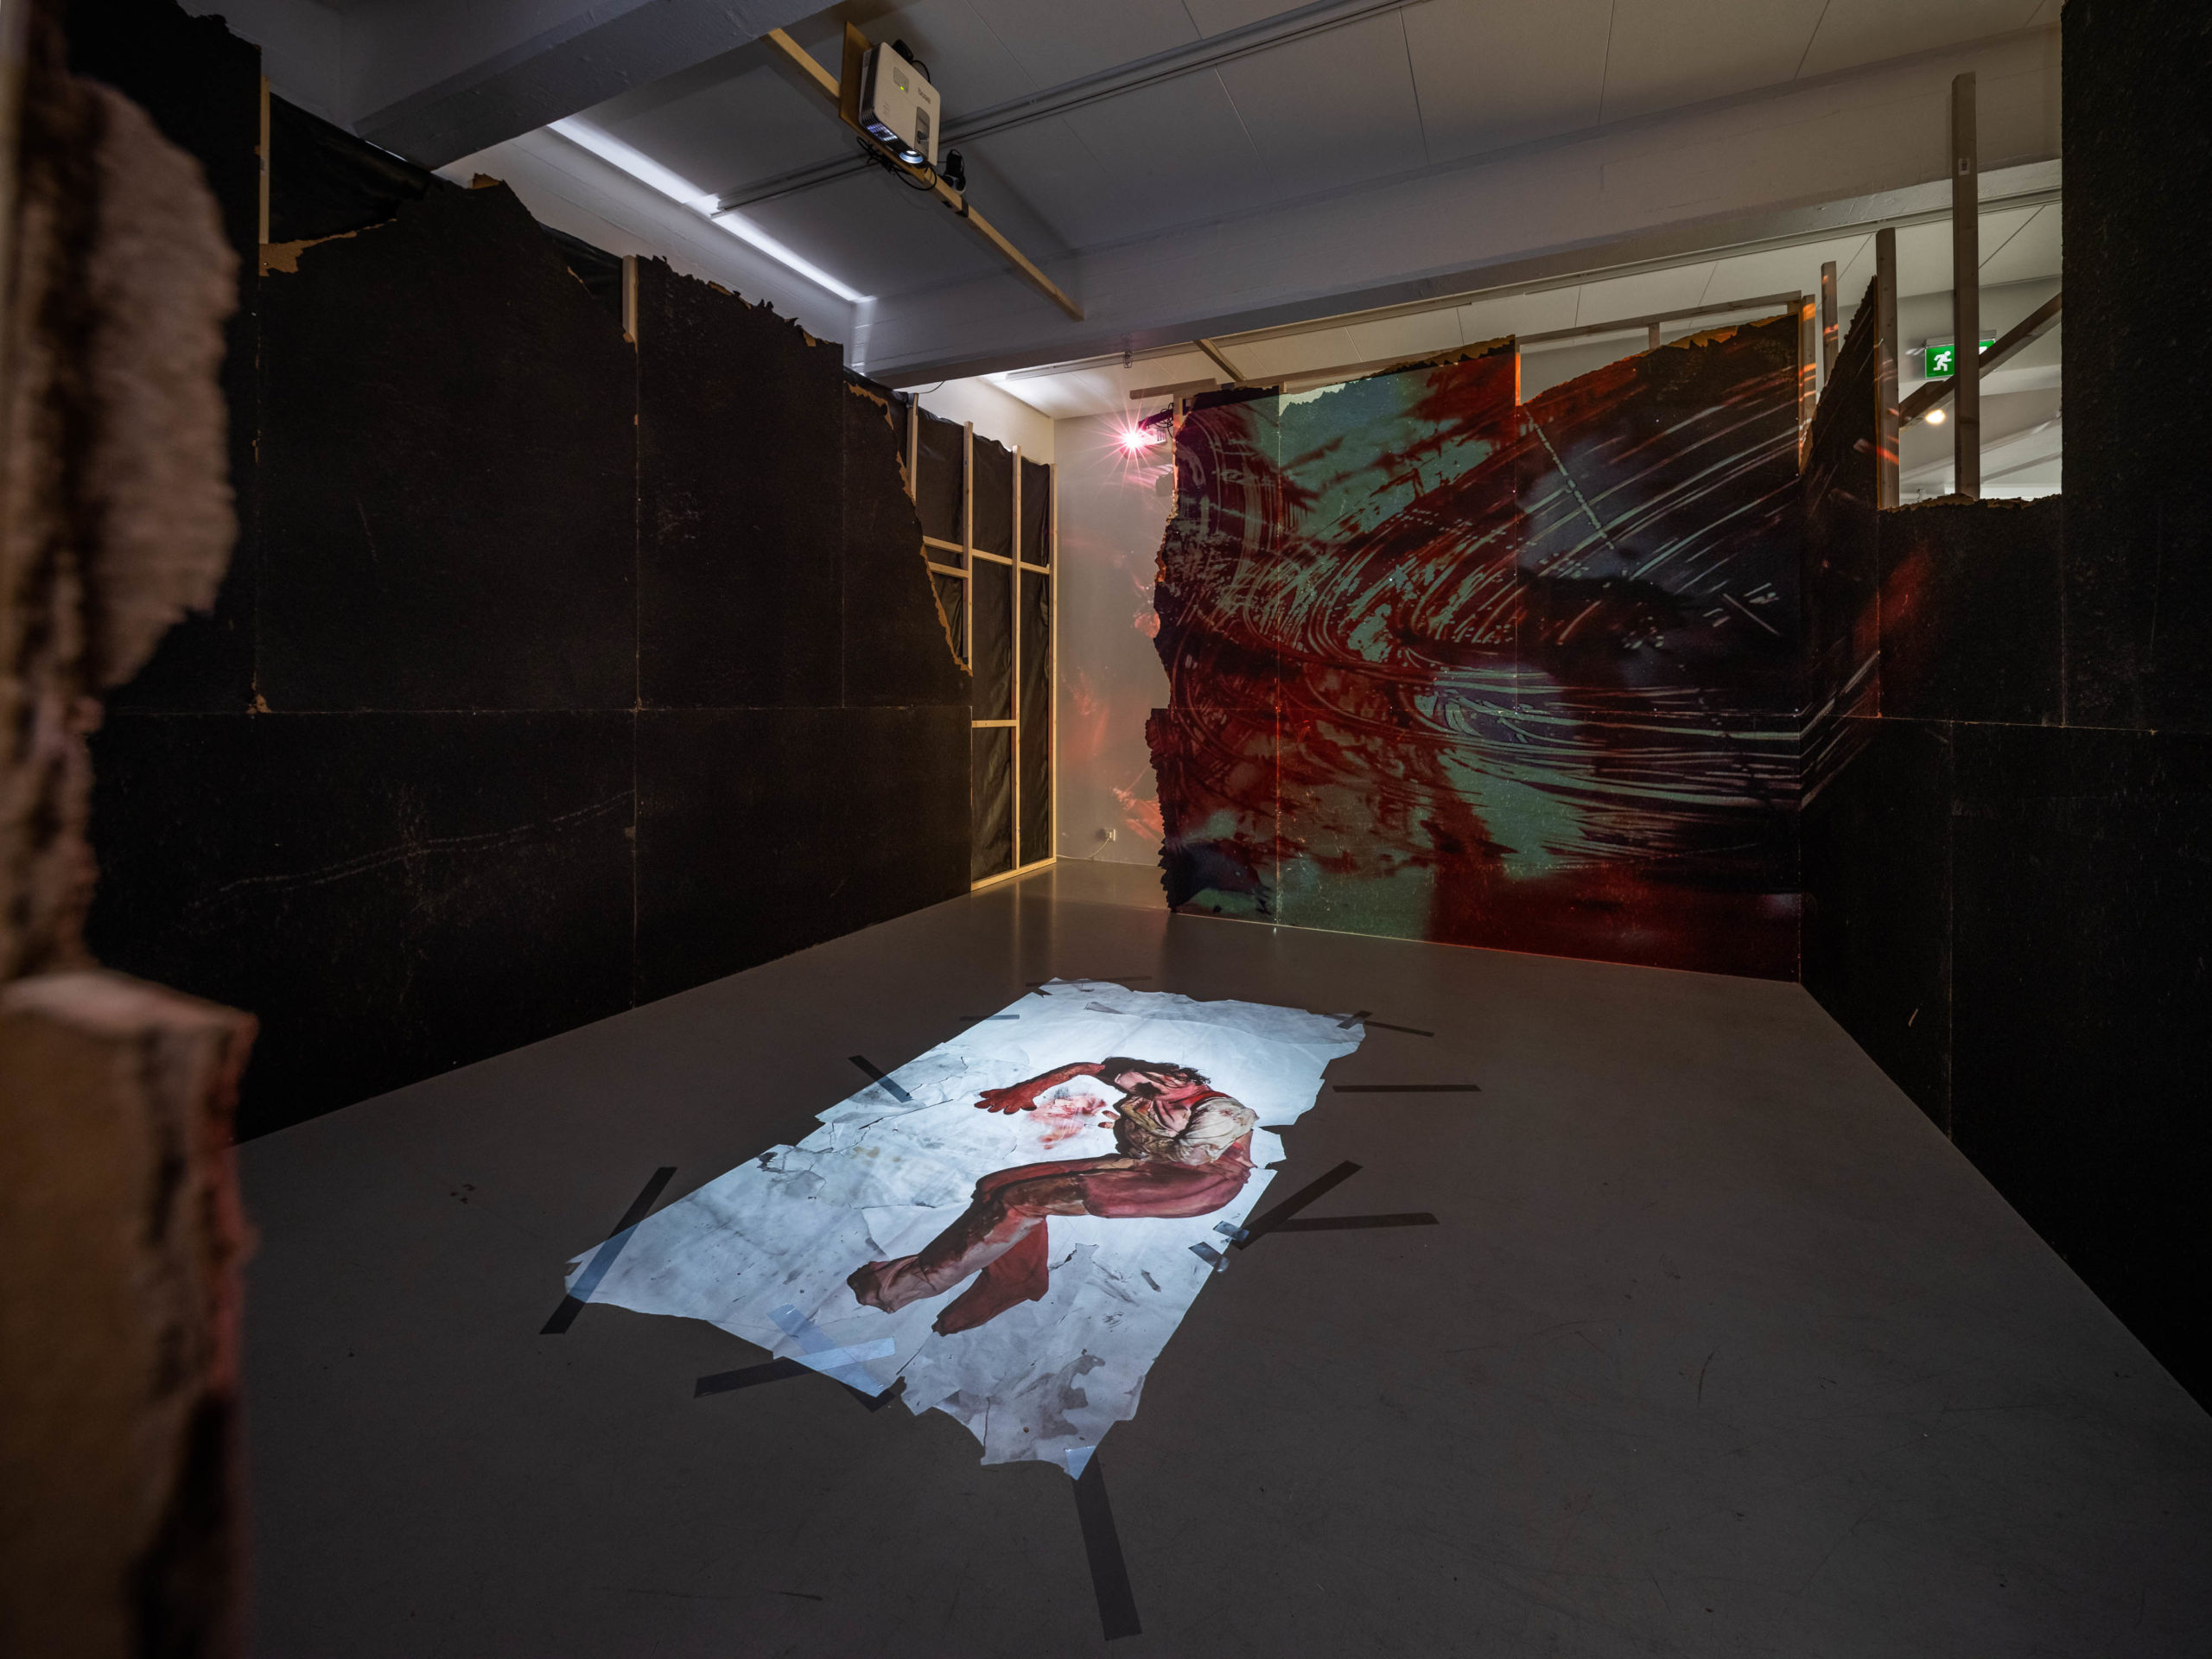 Installation view, Anna-Karin Rasmusson, OMSORGEN, 2020. Photo: Jean-Baptiste Béranger